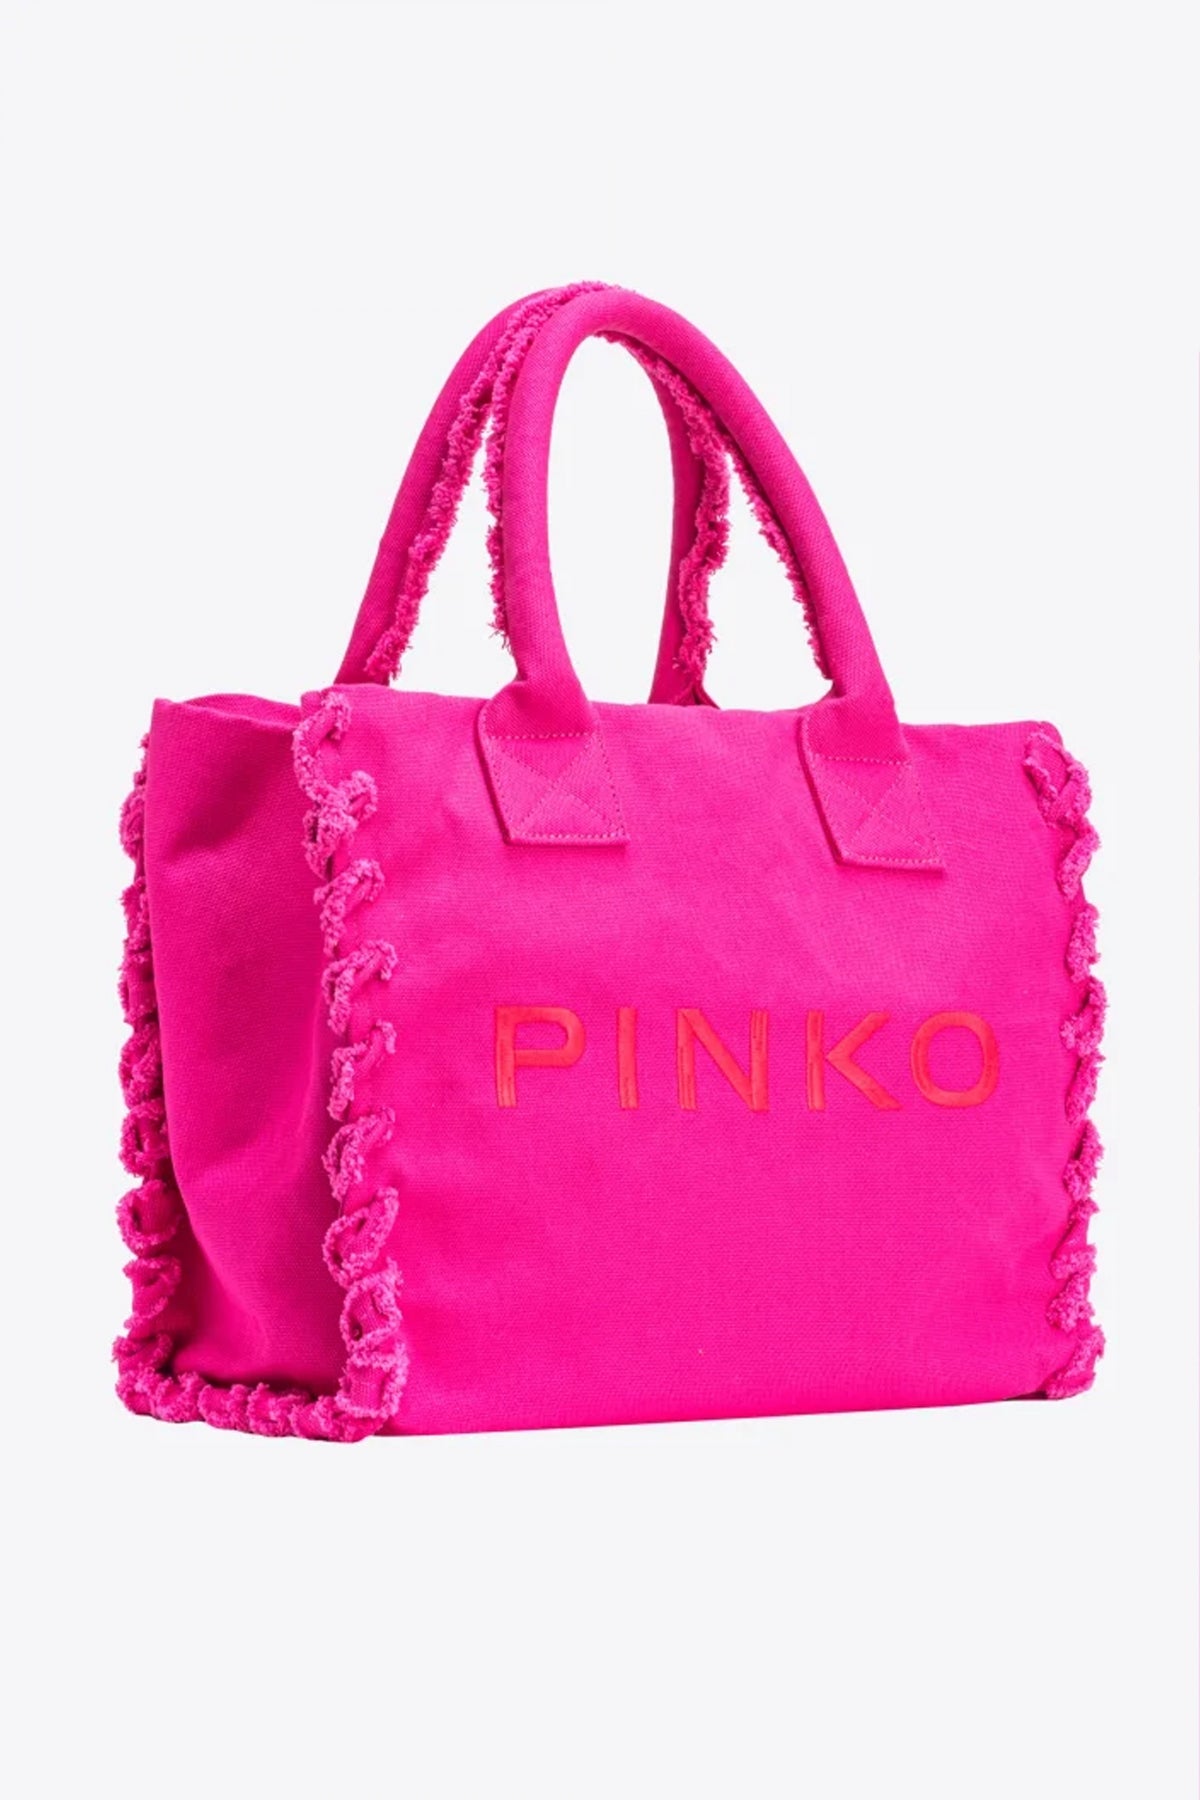 PINKO  BEACH SHOPPING en color ROSA  (1)